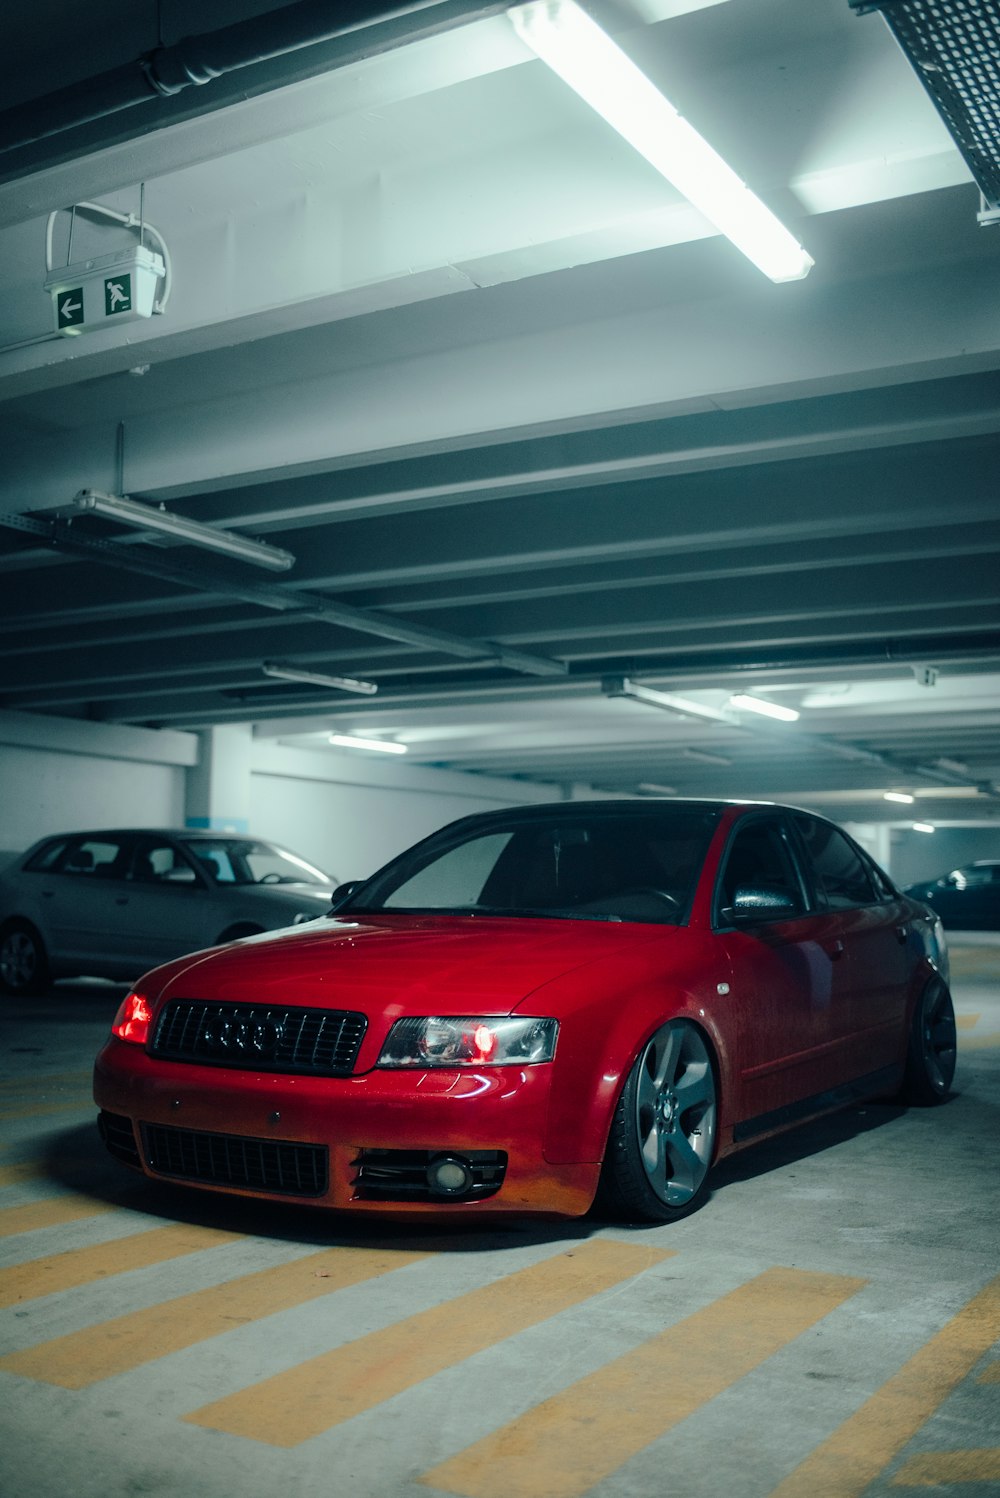 Un'auto rossa parcheggiata in un garage